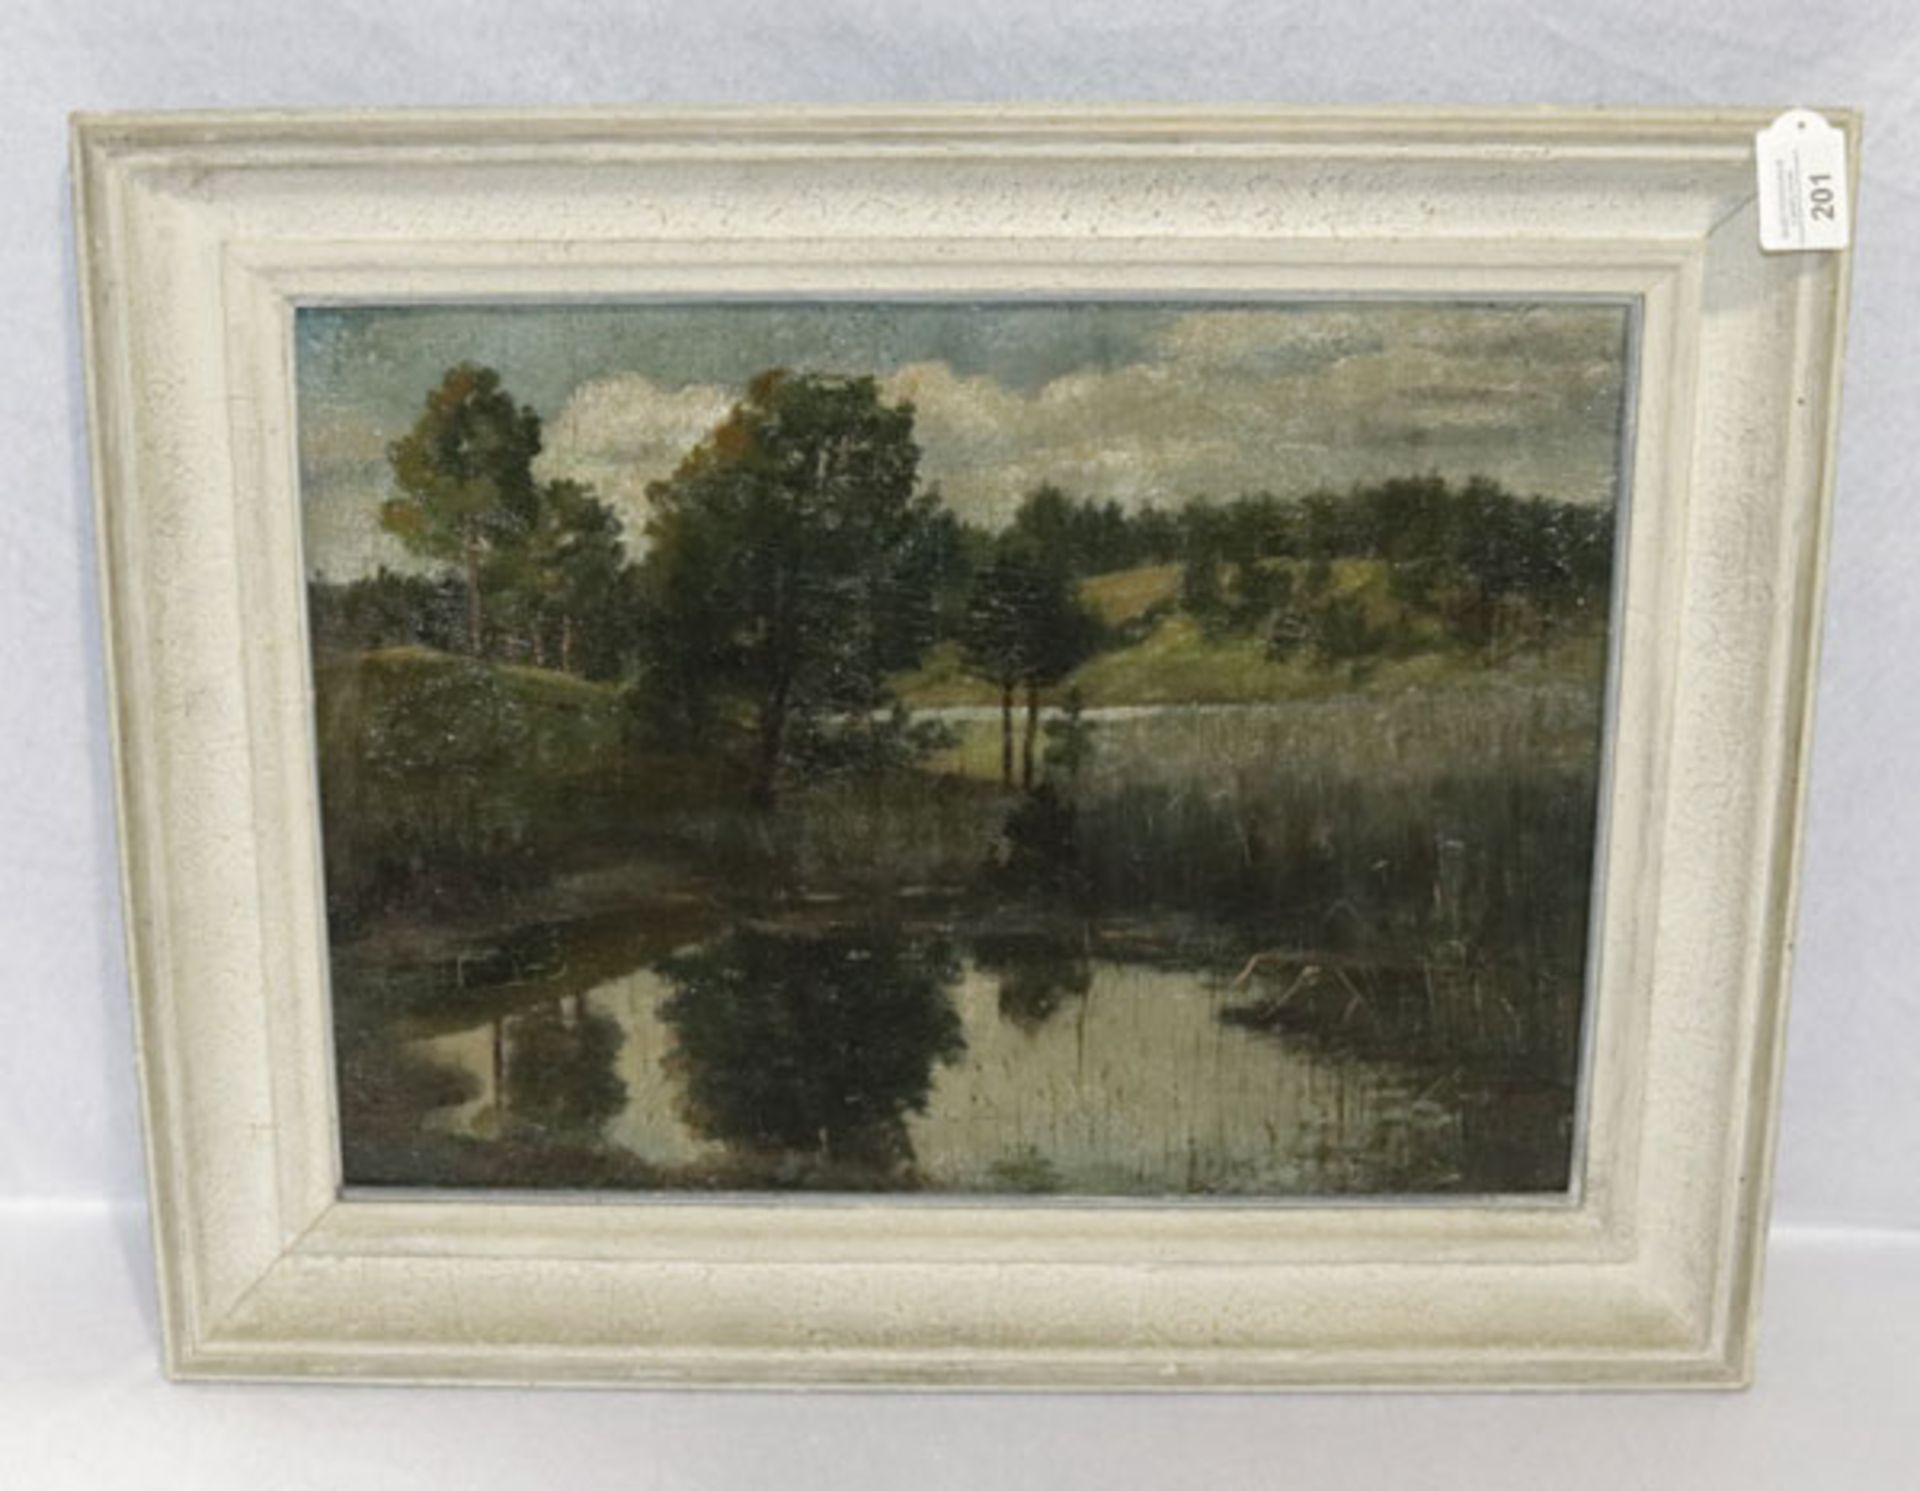 Gemälde ÖL/Malkarton 'Landschafts-Szenerie', gerahmt, Rahmen bestossen, incl. Rahmen 51 cm x 65 cm